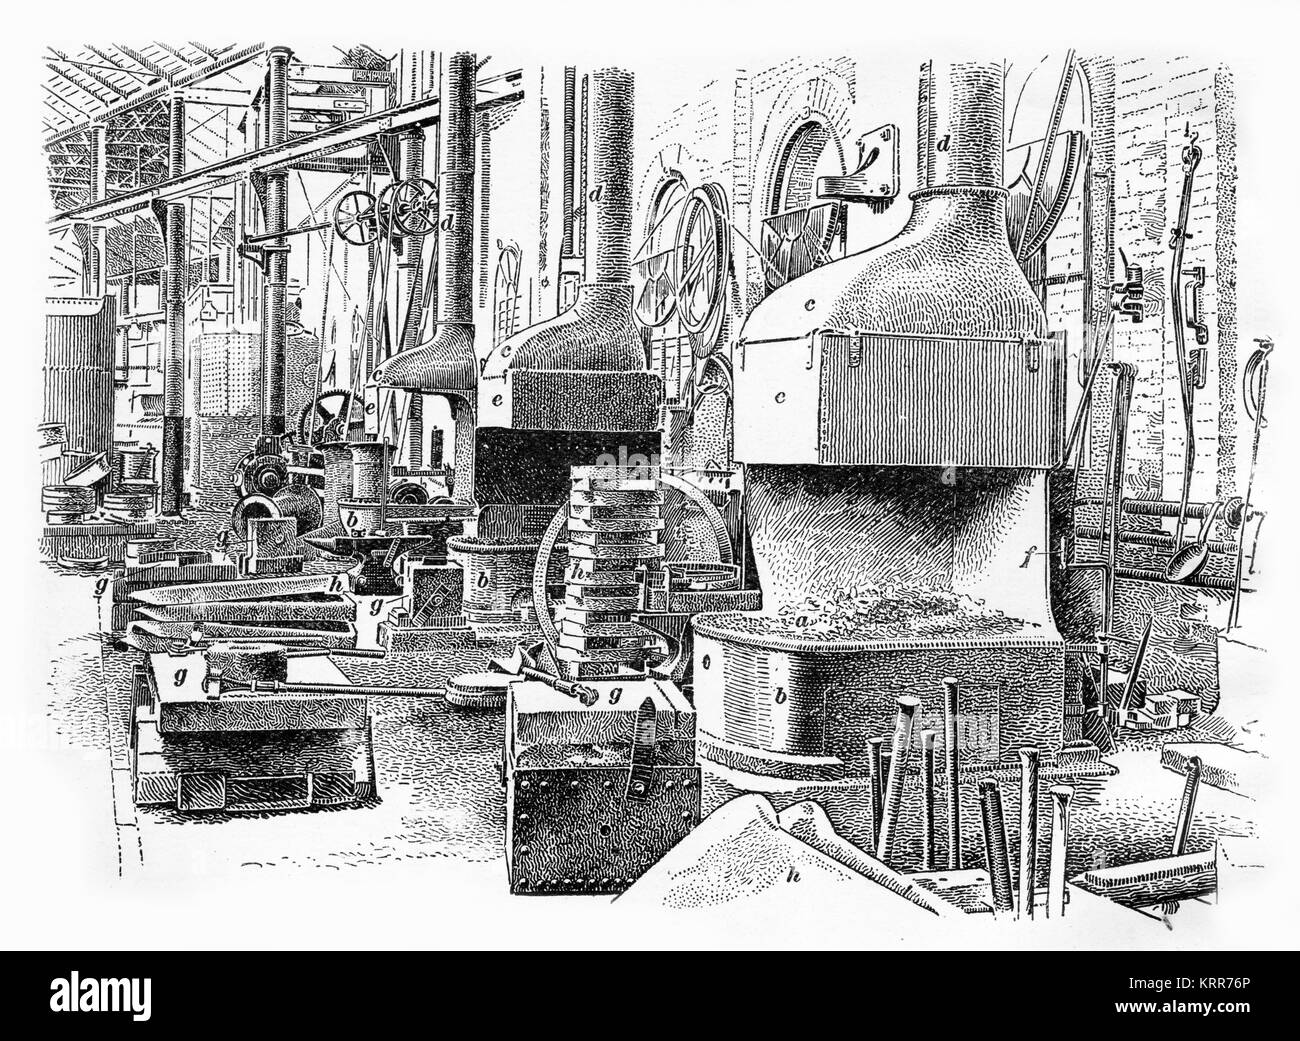 Grabado de la tienda del herrero hacia el final de la Revolución Industrial en Inglaterra. A partir de un grabado realizado en 1890. Foto de stock